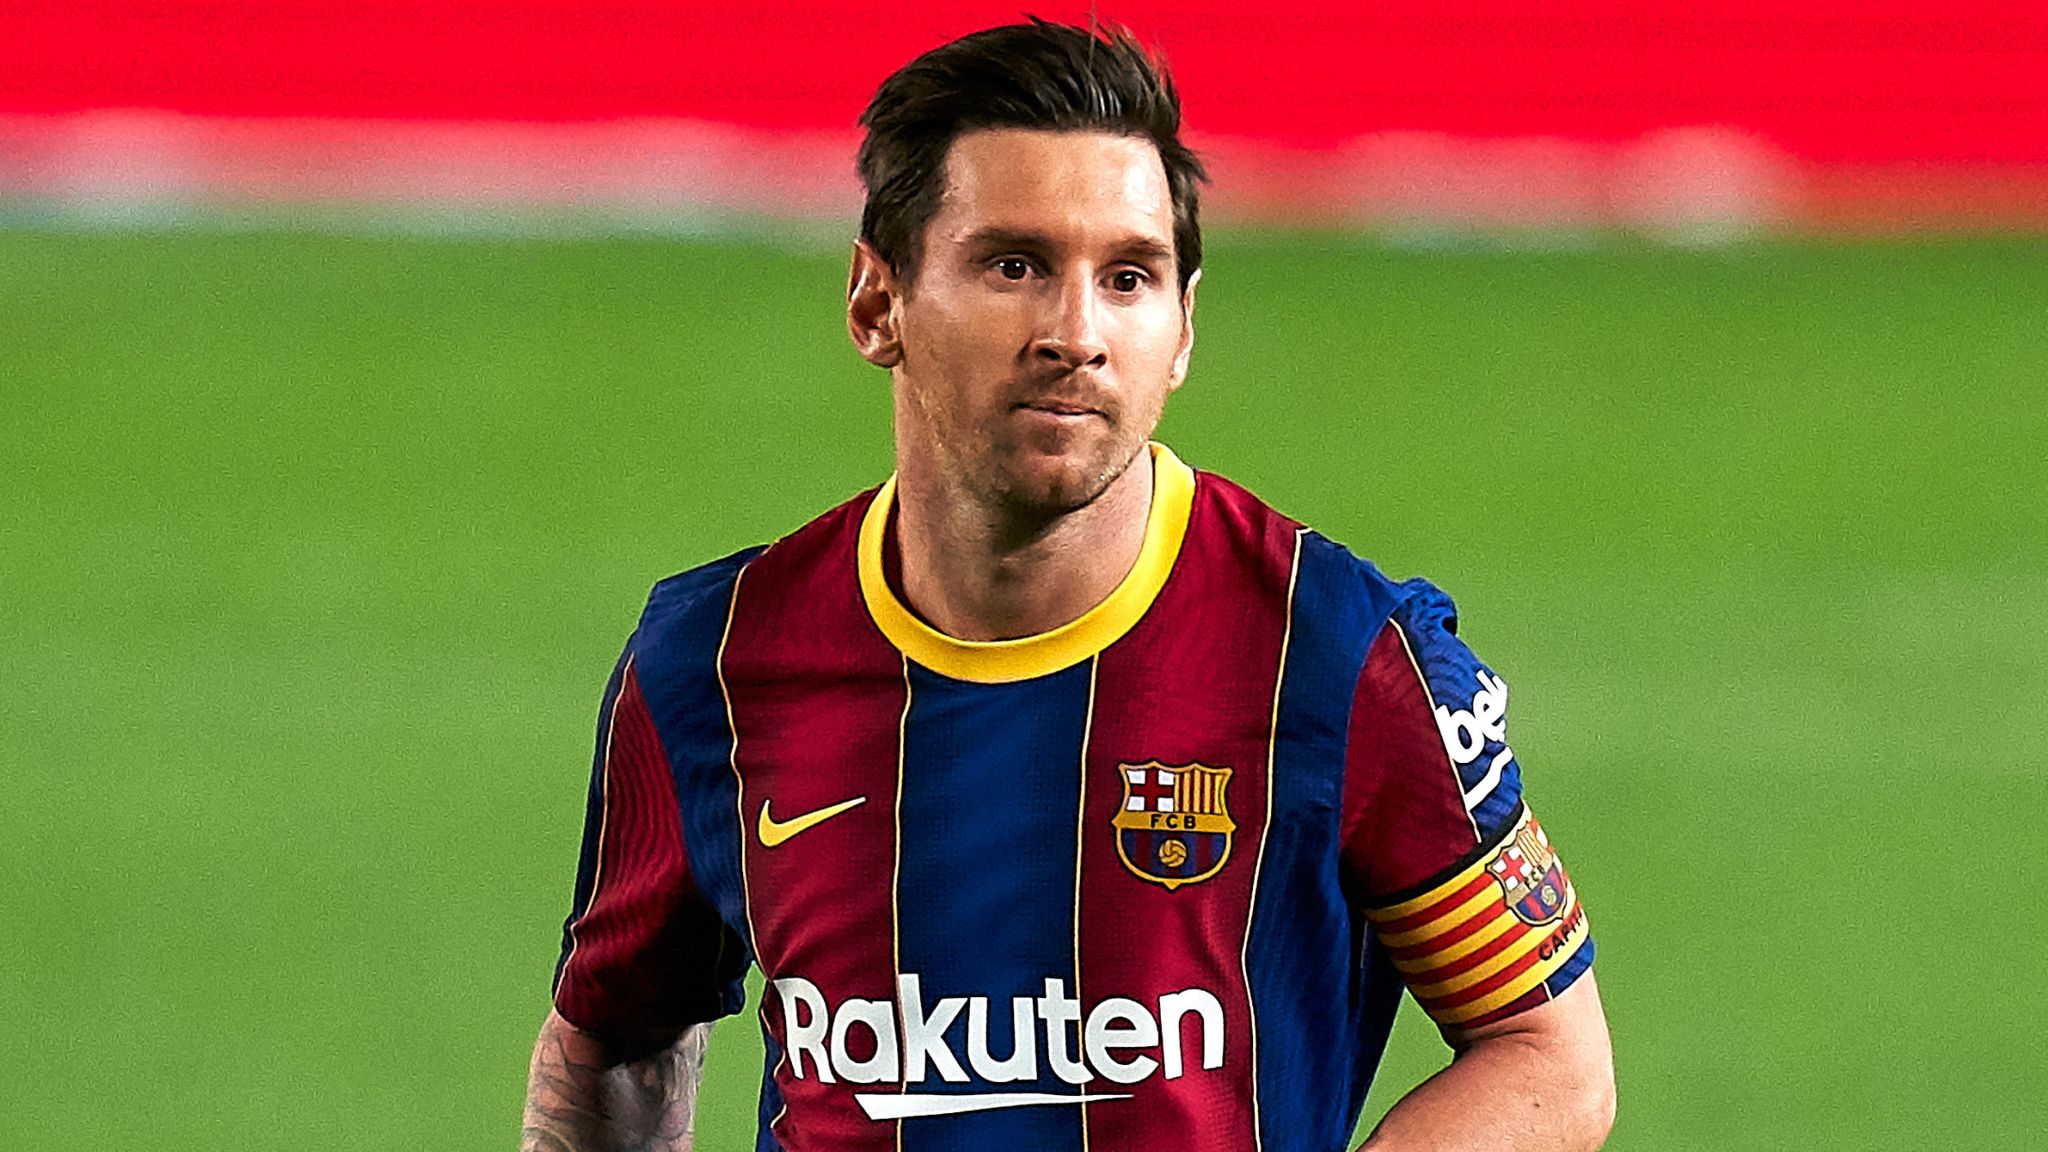 En fin de contrat dans 6 mois, voici les 3 options qui s’offrent à Messi